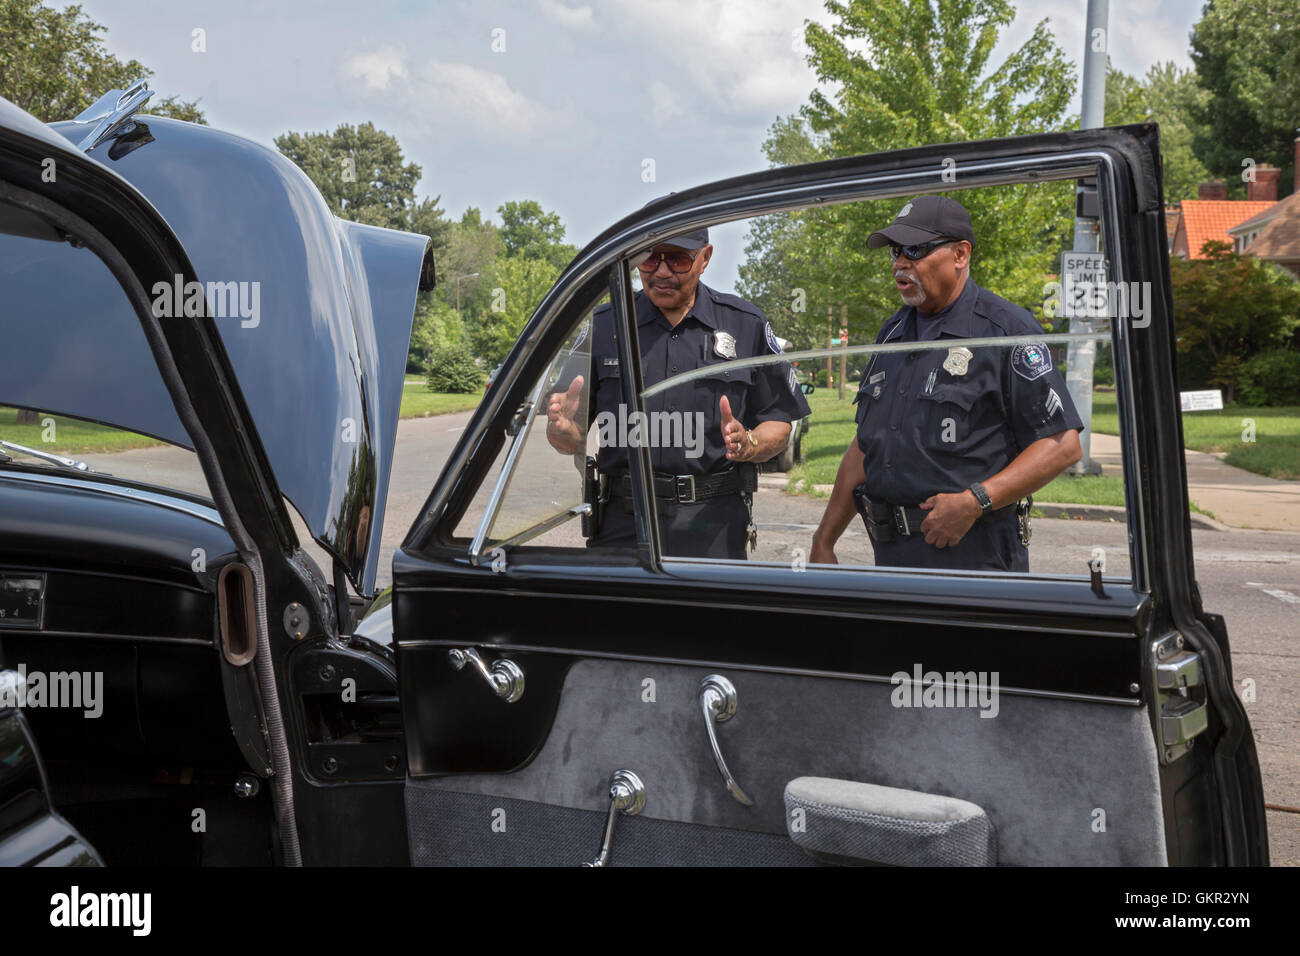 Detroit, Michigan - groupes de quartiers organiser une foire de rue l'été. Réserver les policiers examinent une Cadillac 1949 sur l'affichage. Banque D'Images